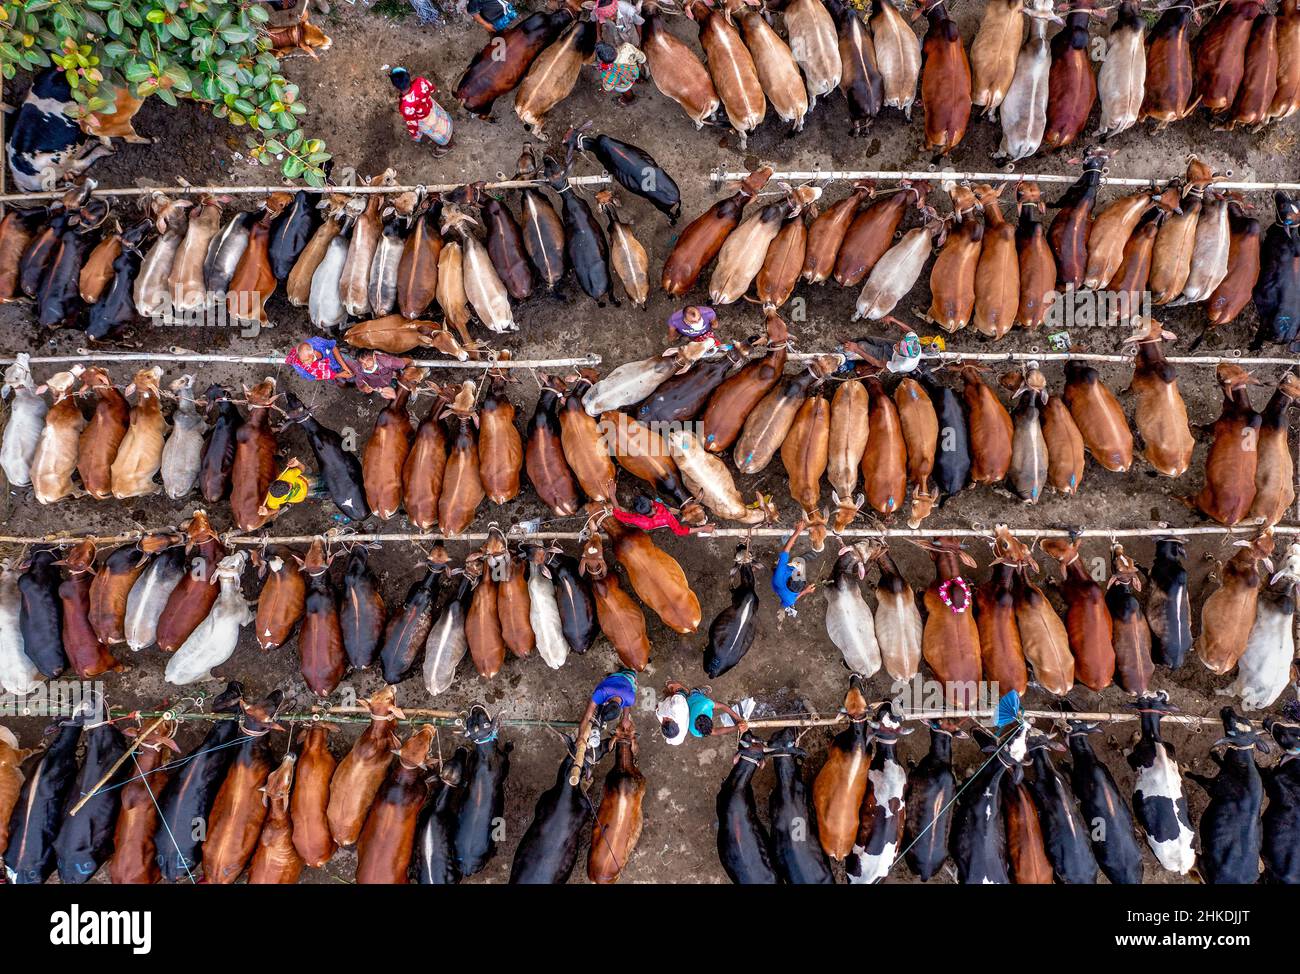 Migliaia di mucche sono allineate per essere vendute in un mercato di bestiame vivace in Bangladesh. Oltre 50.000 degli animali sono raccolti insieme dai coltivatori. Foto Stock